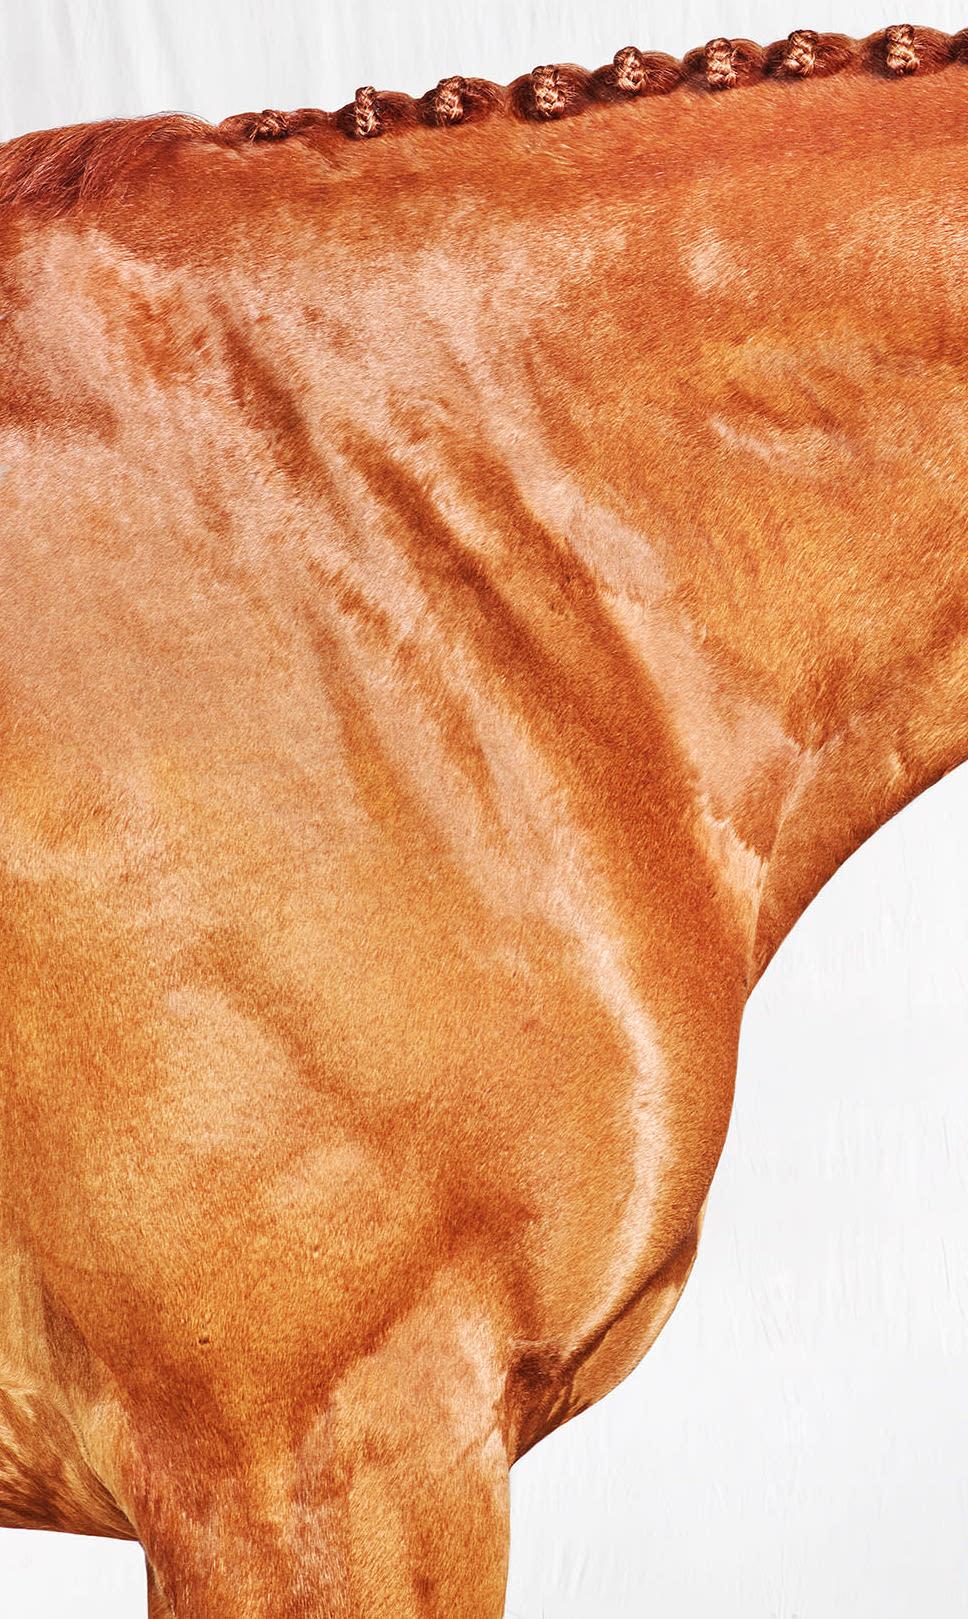 Romy Neck - Vollfarbiges Pferdeporträt in limitierter Auflage 2017 (Zeitgenössisch), Photograph, von Juan Lamarca